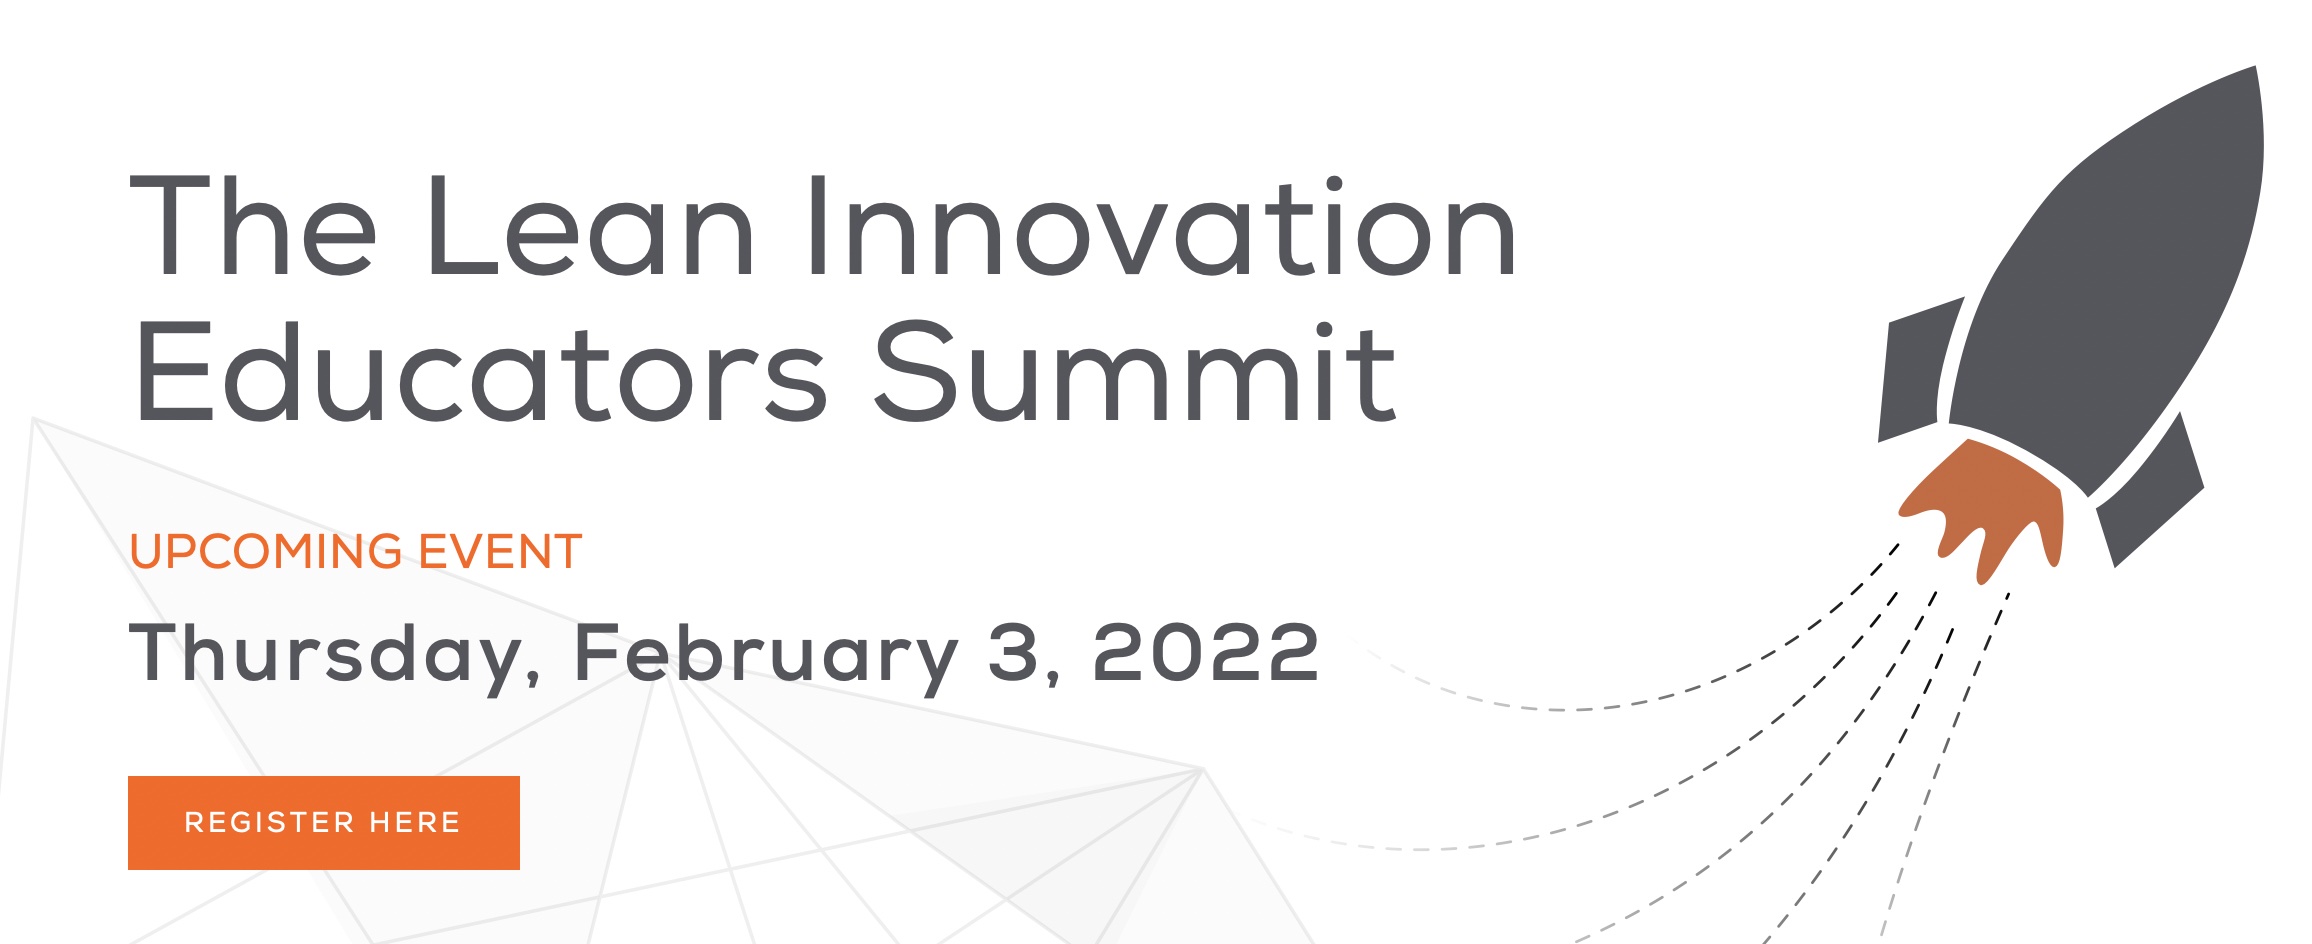 5th Lean Innovation Educators Summit